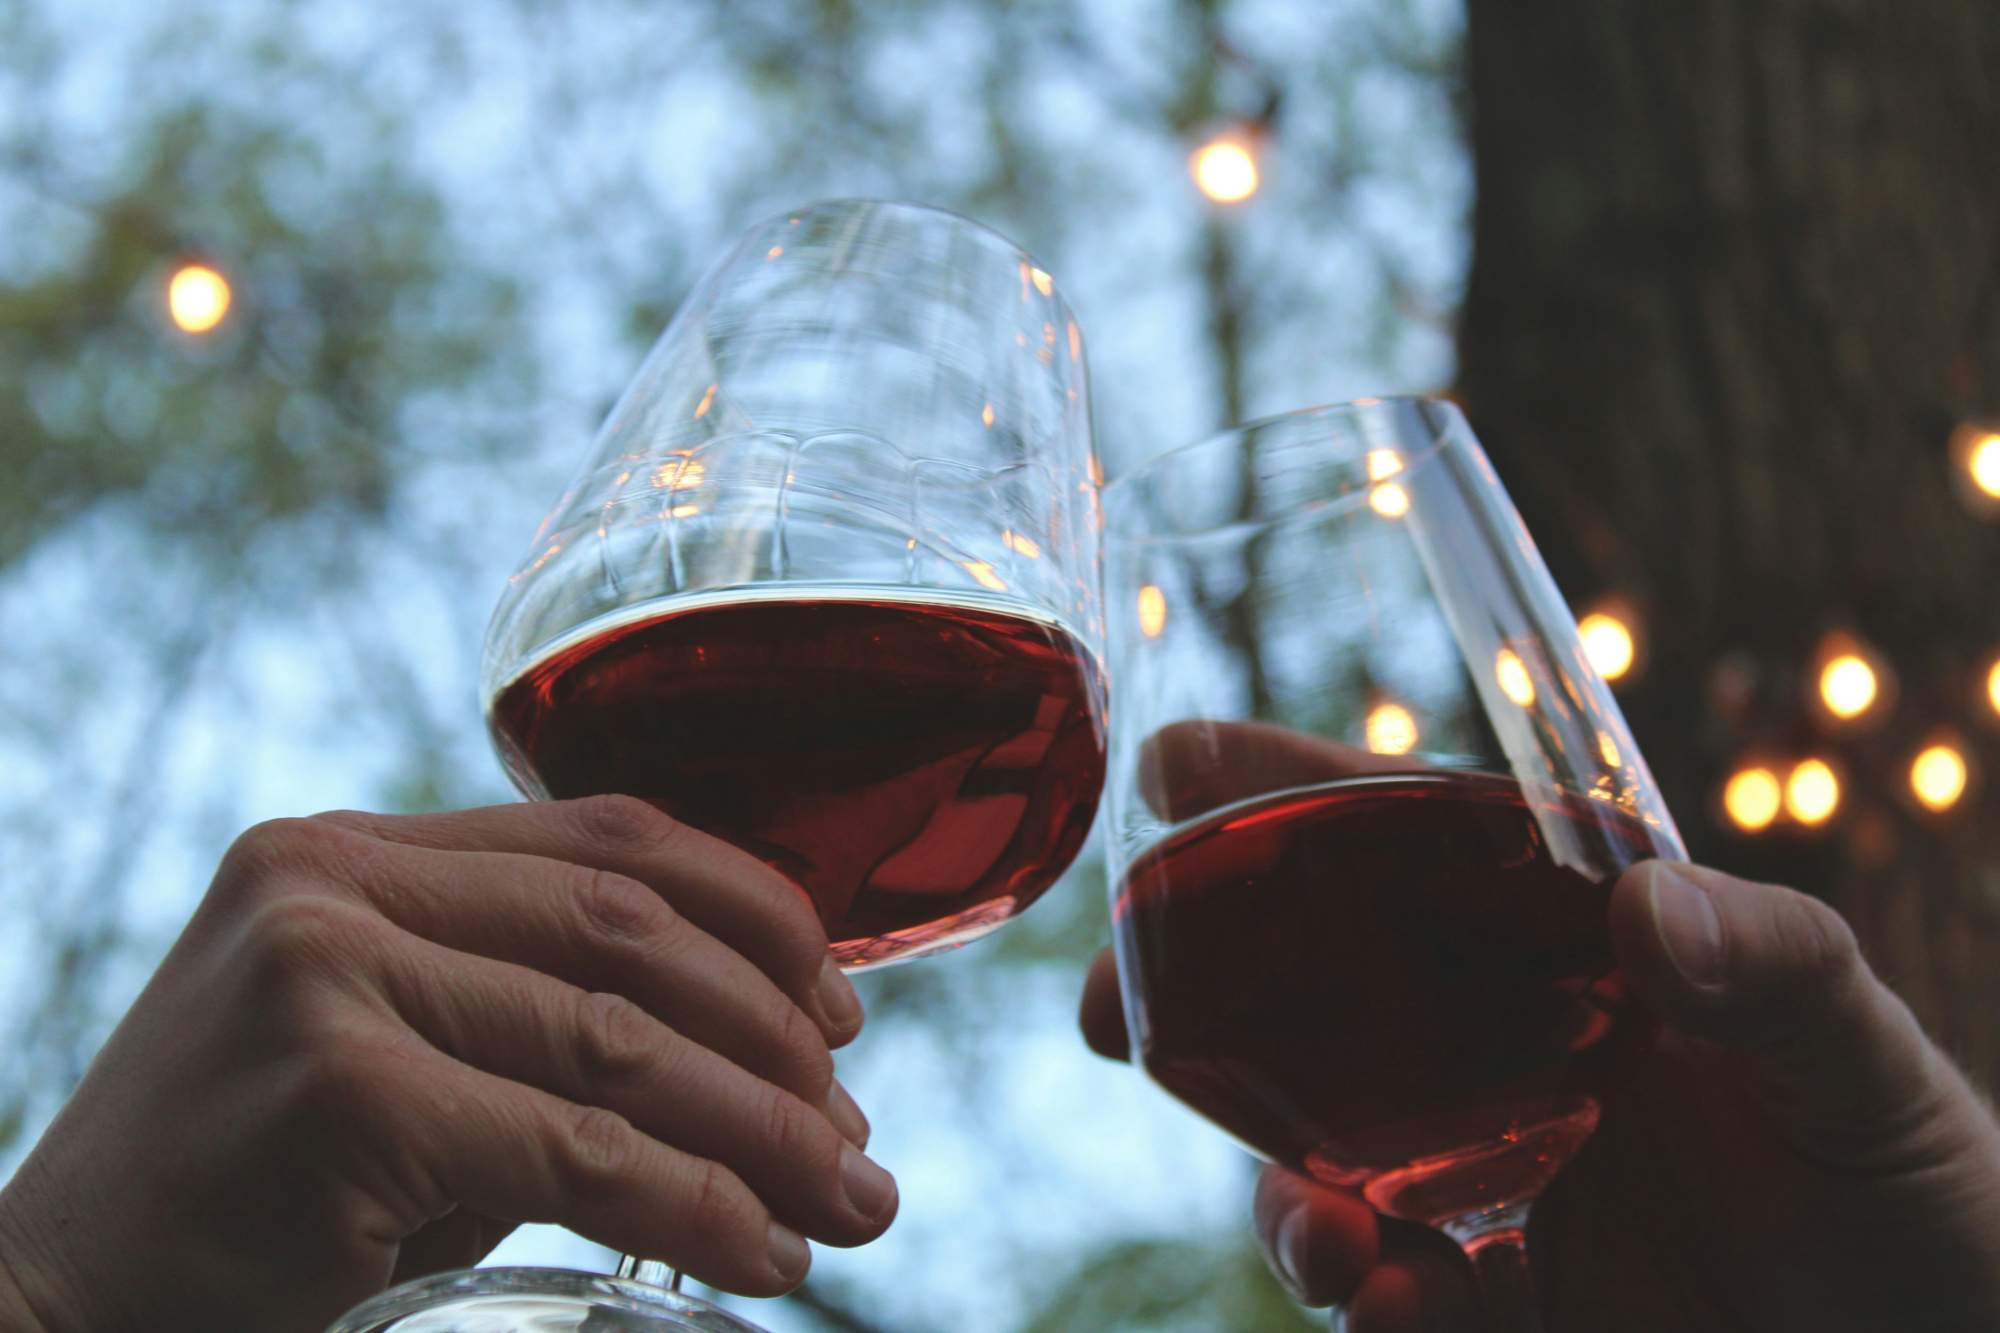 découvrez une sélection exceptionnelle de vins rouges, parfaits pour accompagner vos repas et savourer des moments de convivialité.